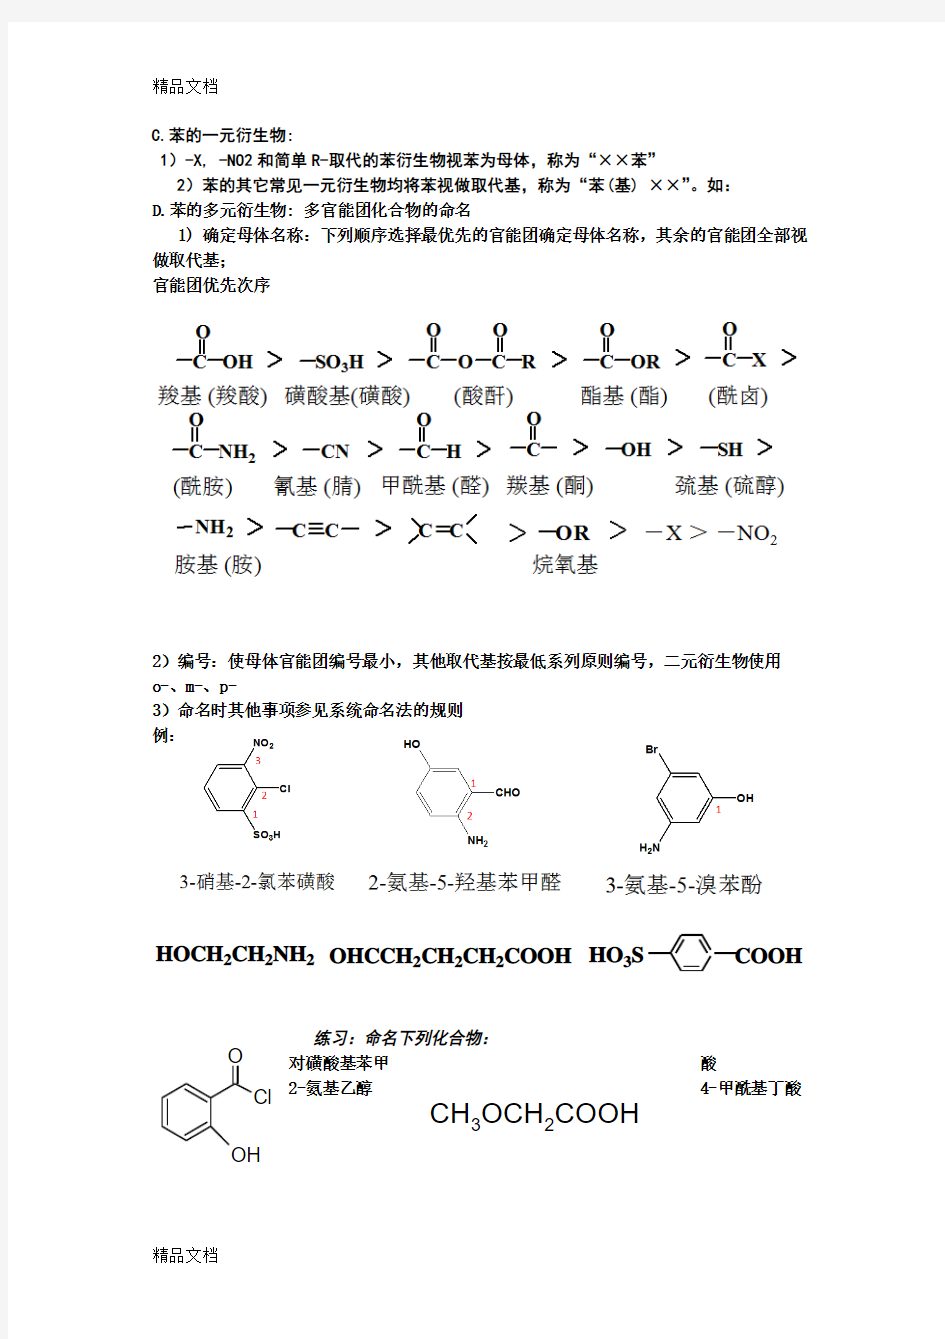 最新IUPAC系统命名法(完善版)资料